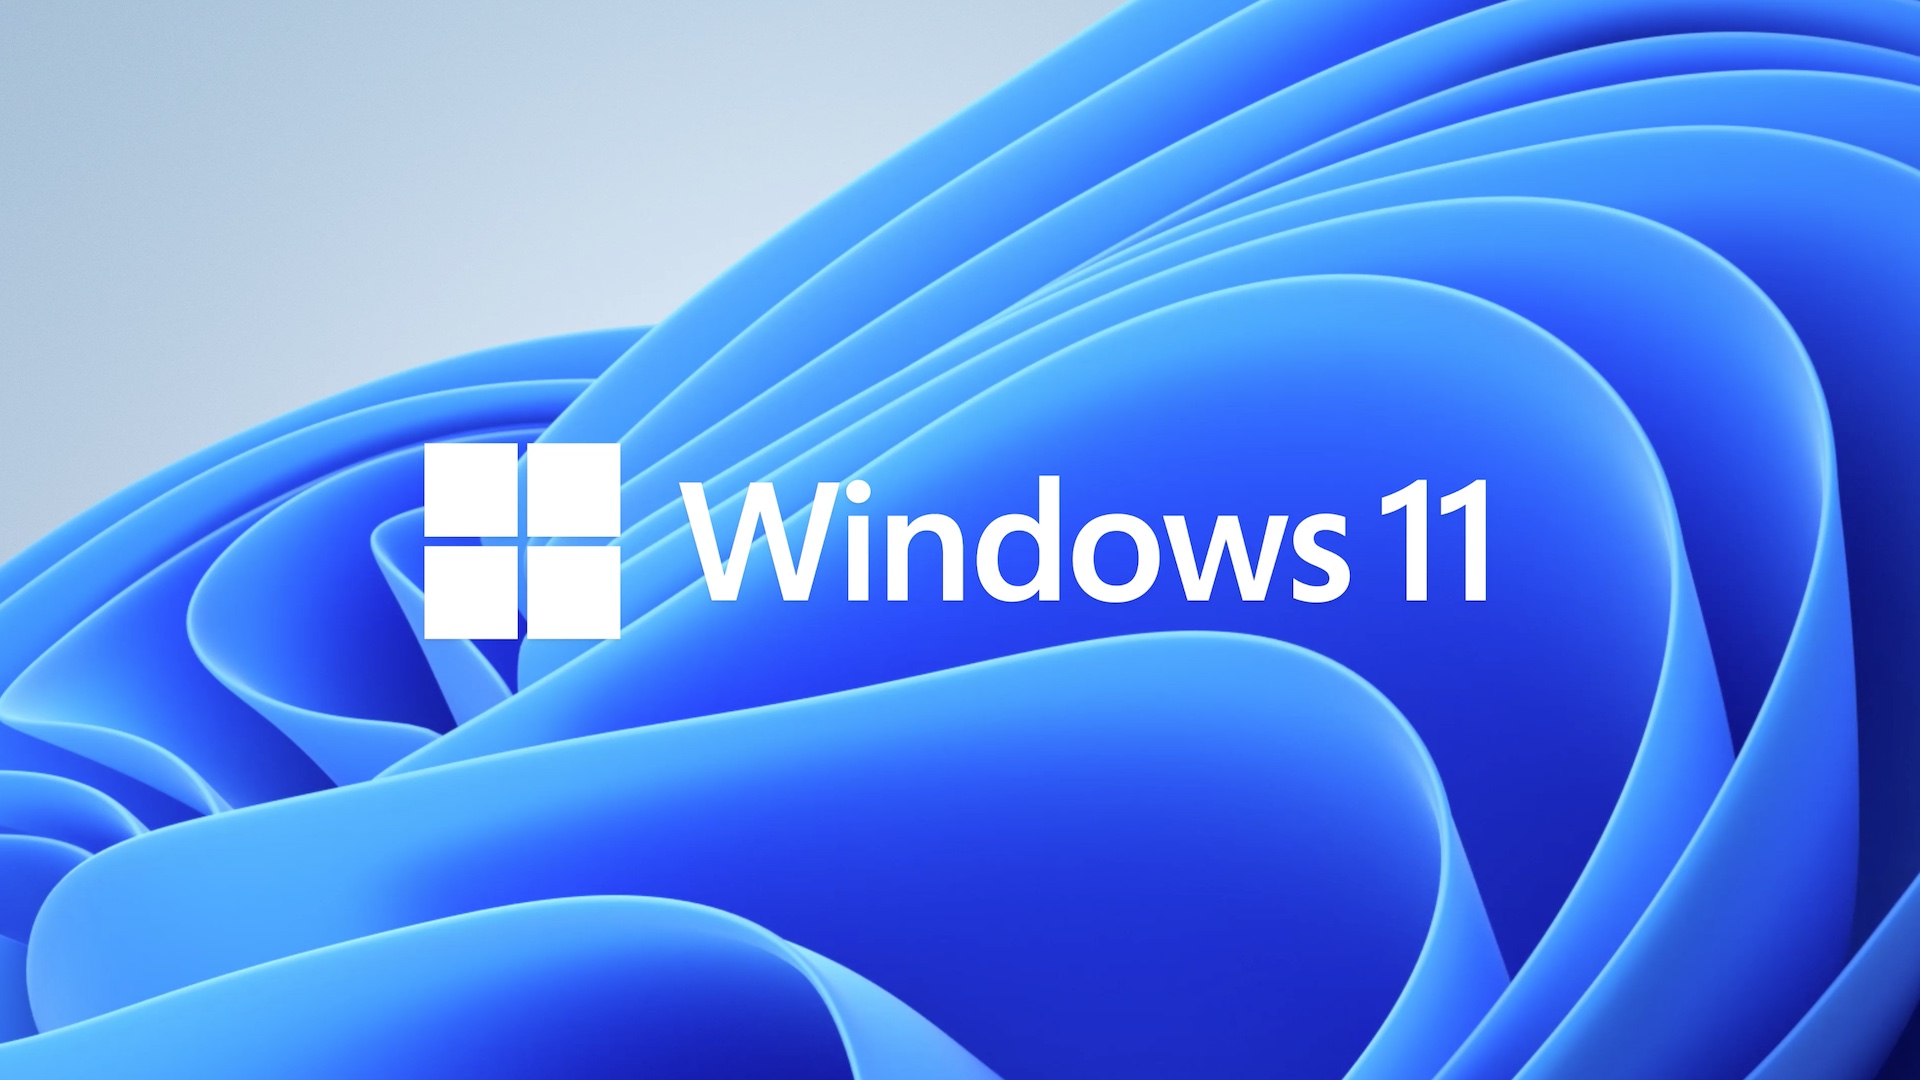 Sắp ra mắt phiên bản mới nhất của hệ điều hành Microsoft - Win 11, với nhiều tính năng mới và tối ưu hóa hoàn hảo. Bạn có thể trải nghiệm tốc độ đáng kinh ngạc và sự tiện lợi vượt trội chỉ với một cú click. Hãy cập nhật ngay để không bỏ lỡ điều này!